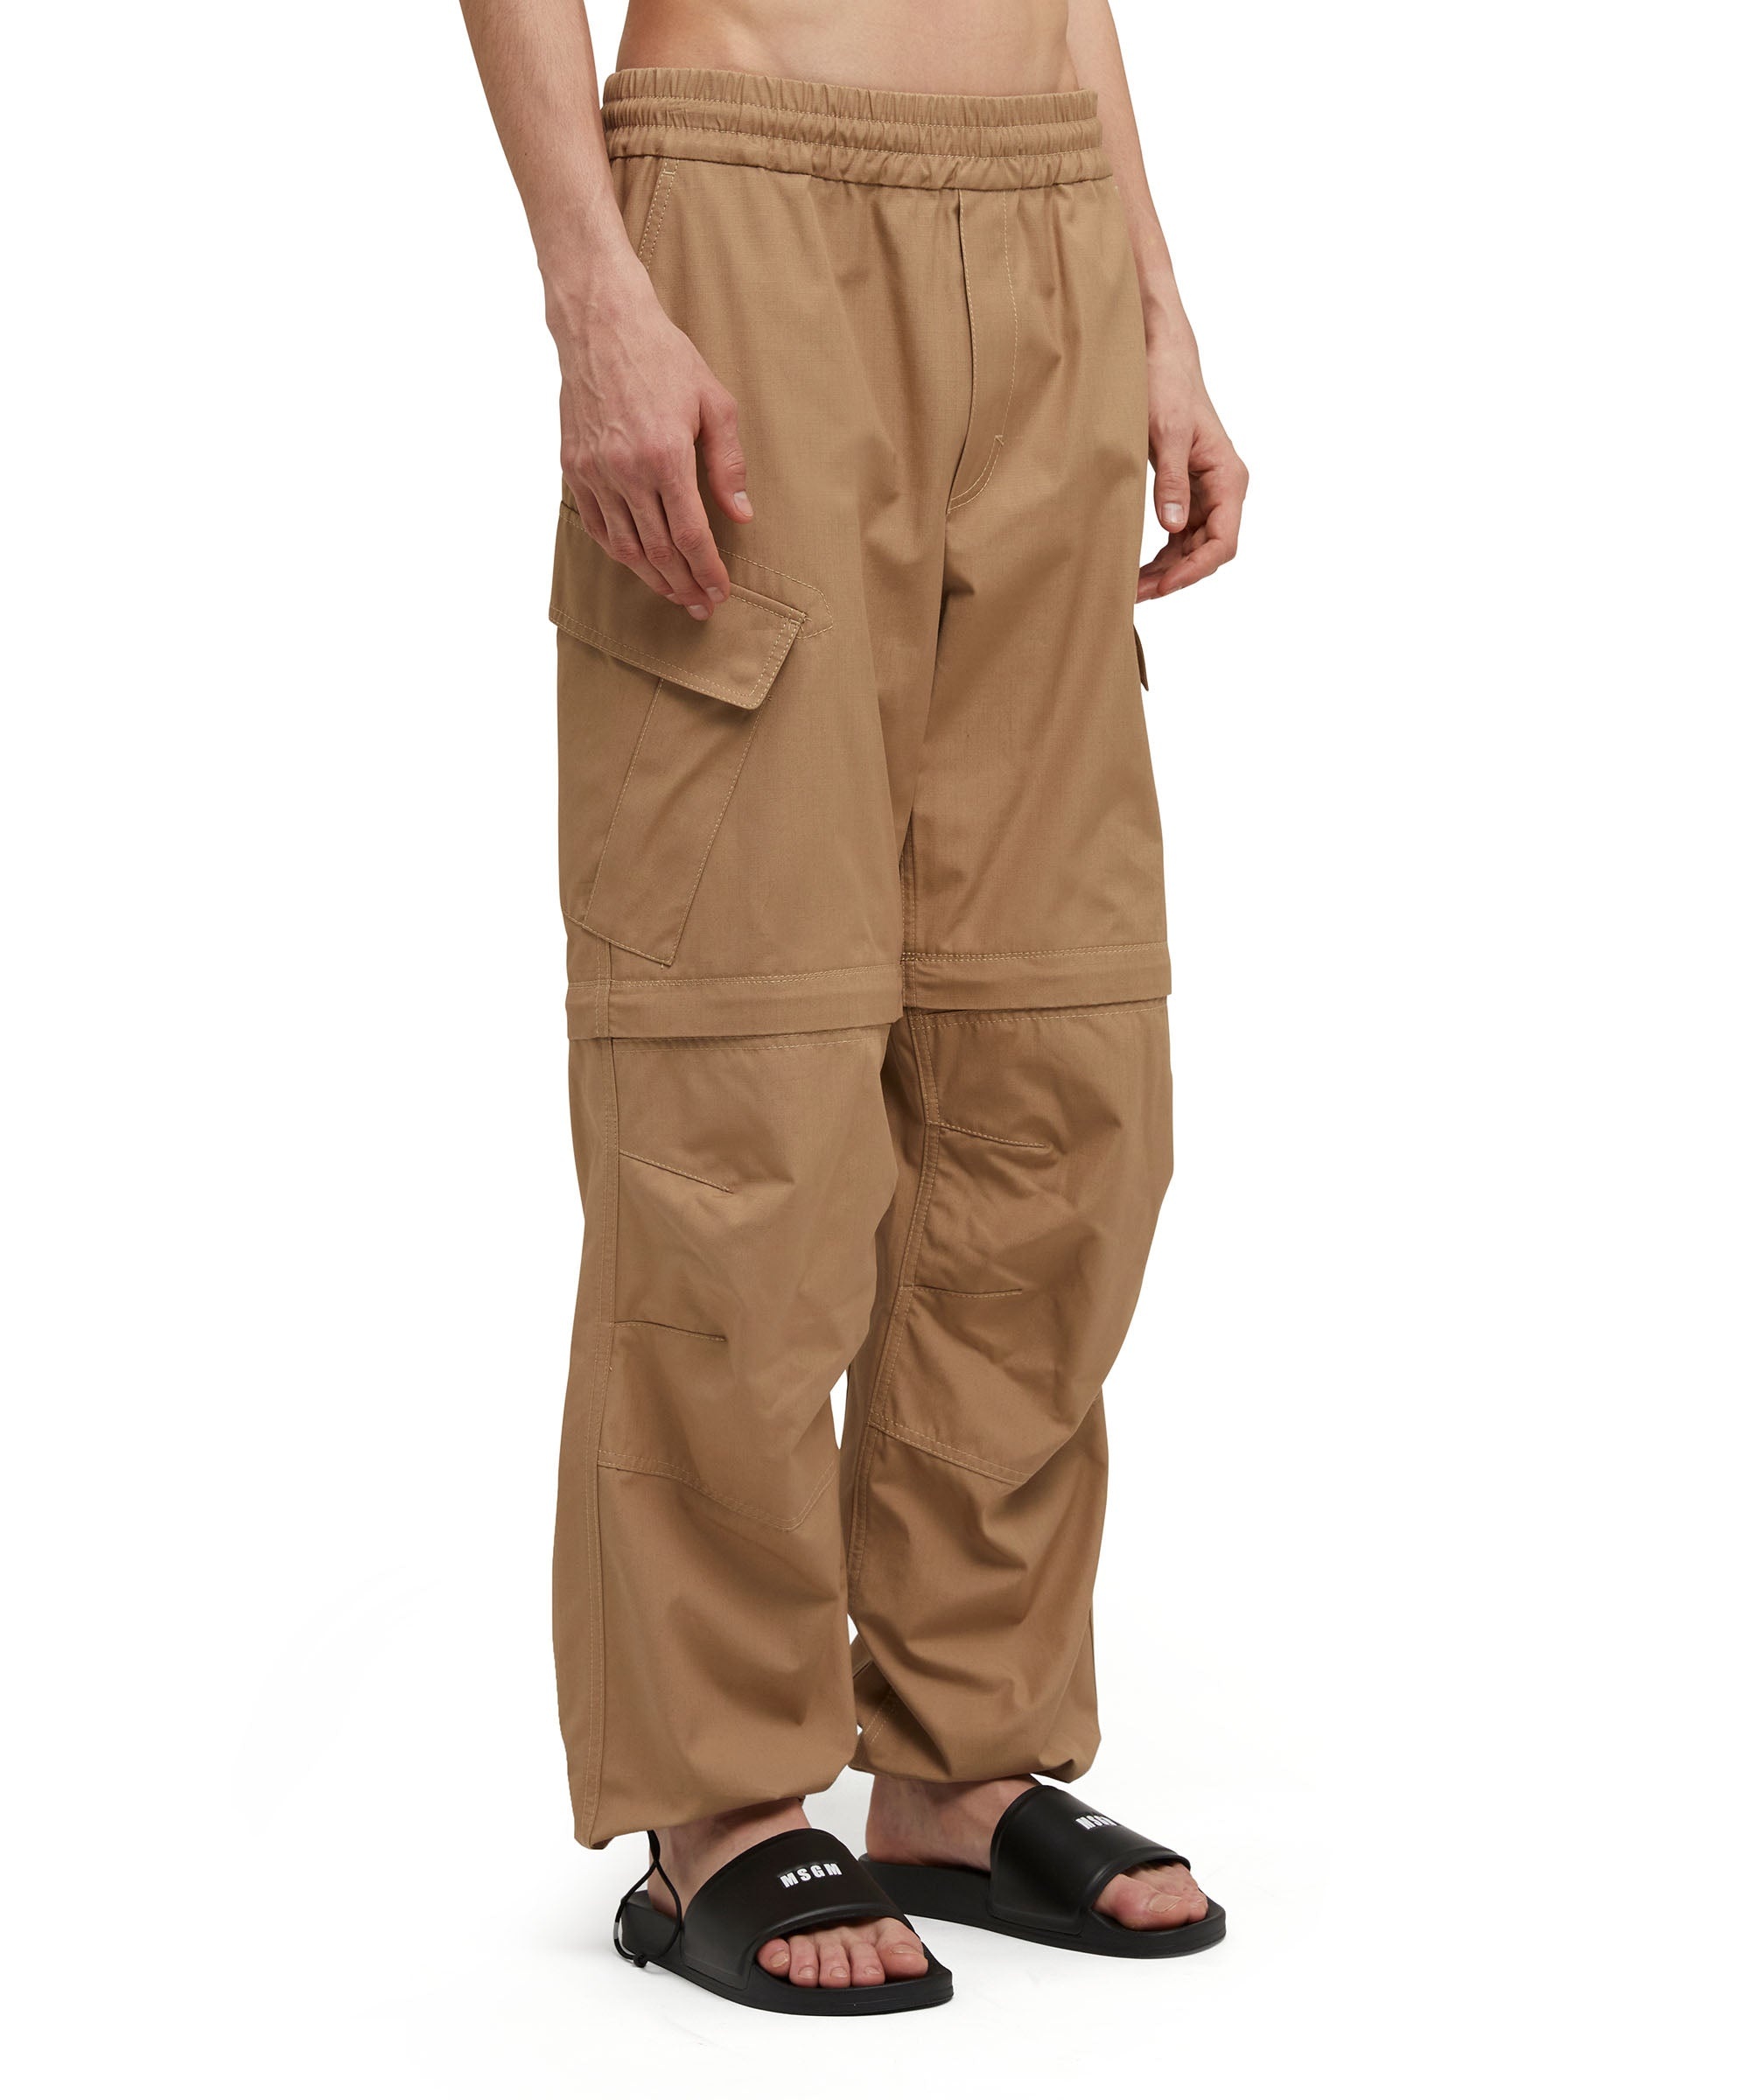 Solid color cotton cargo pants - 4